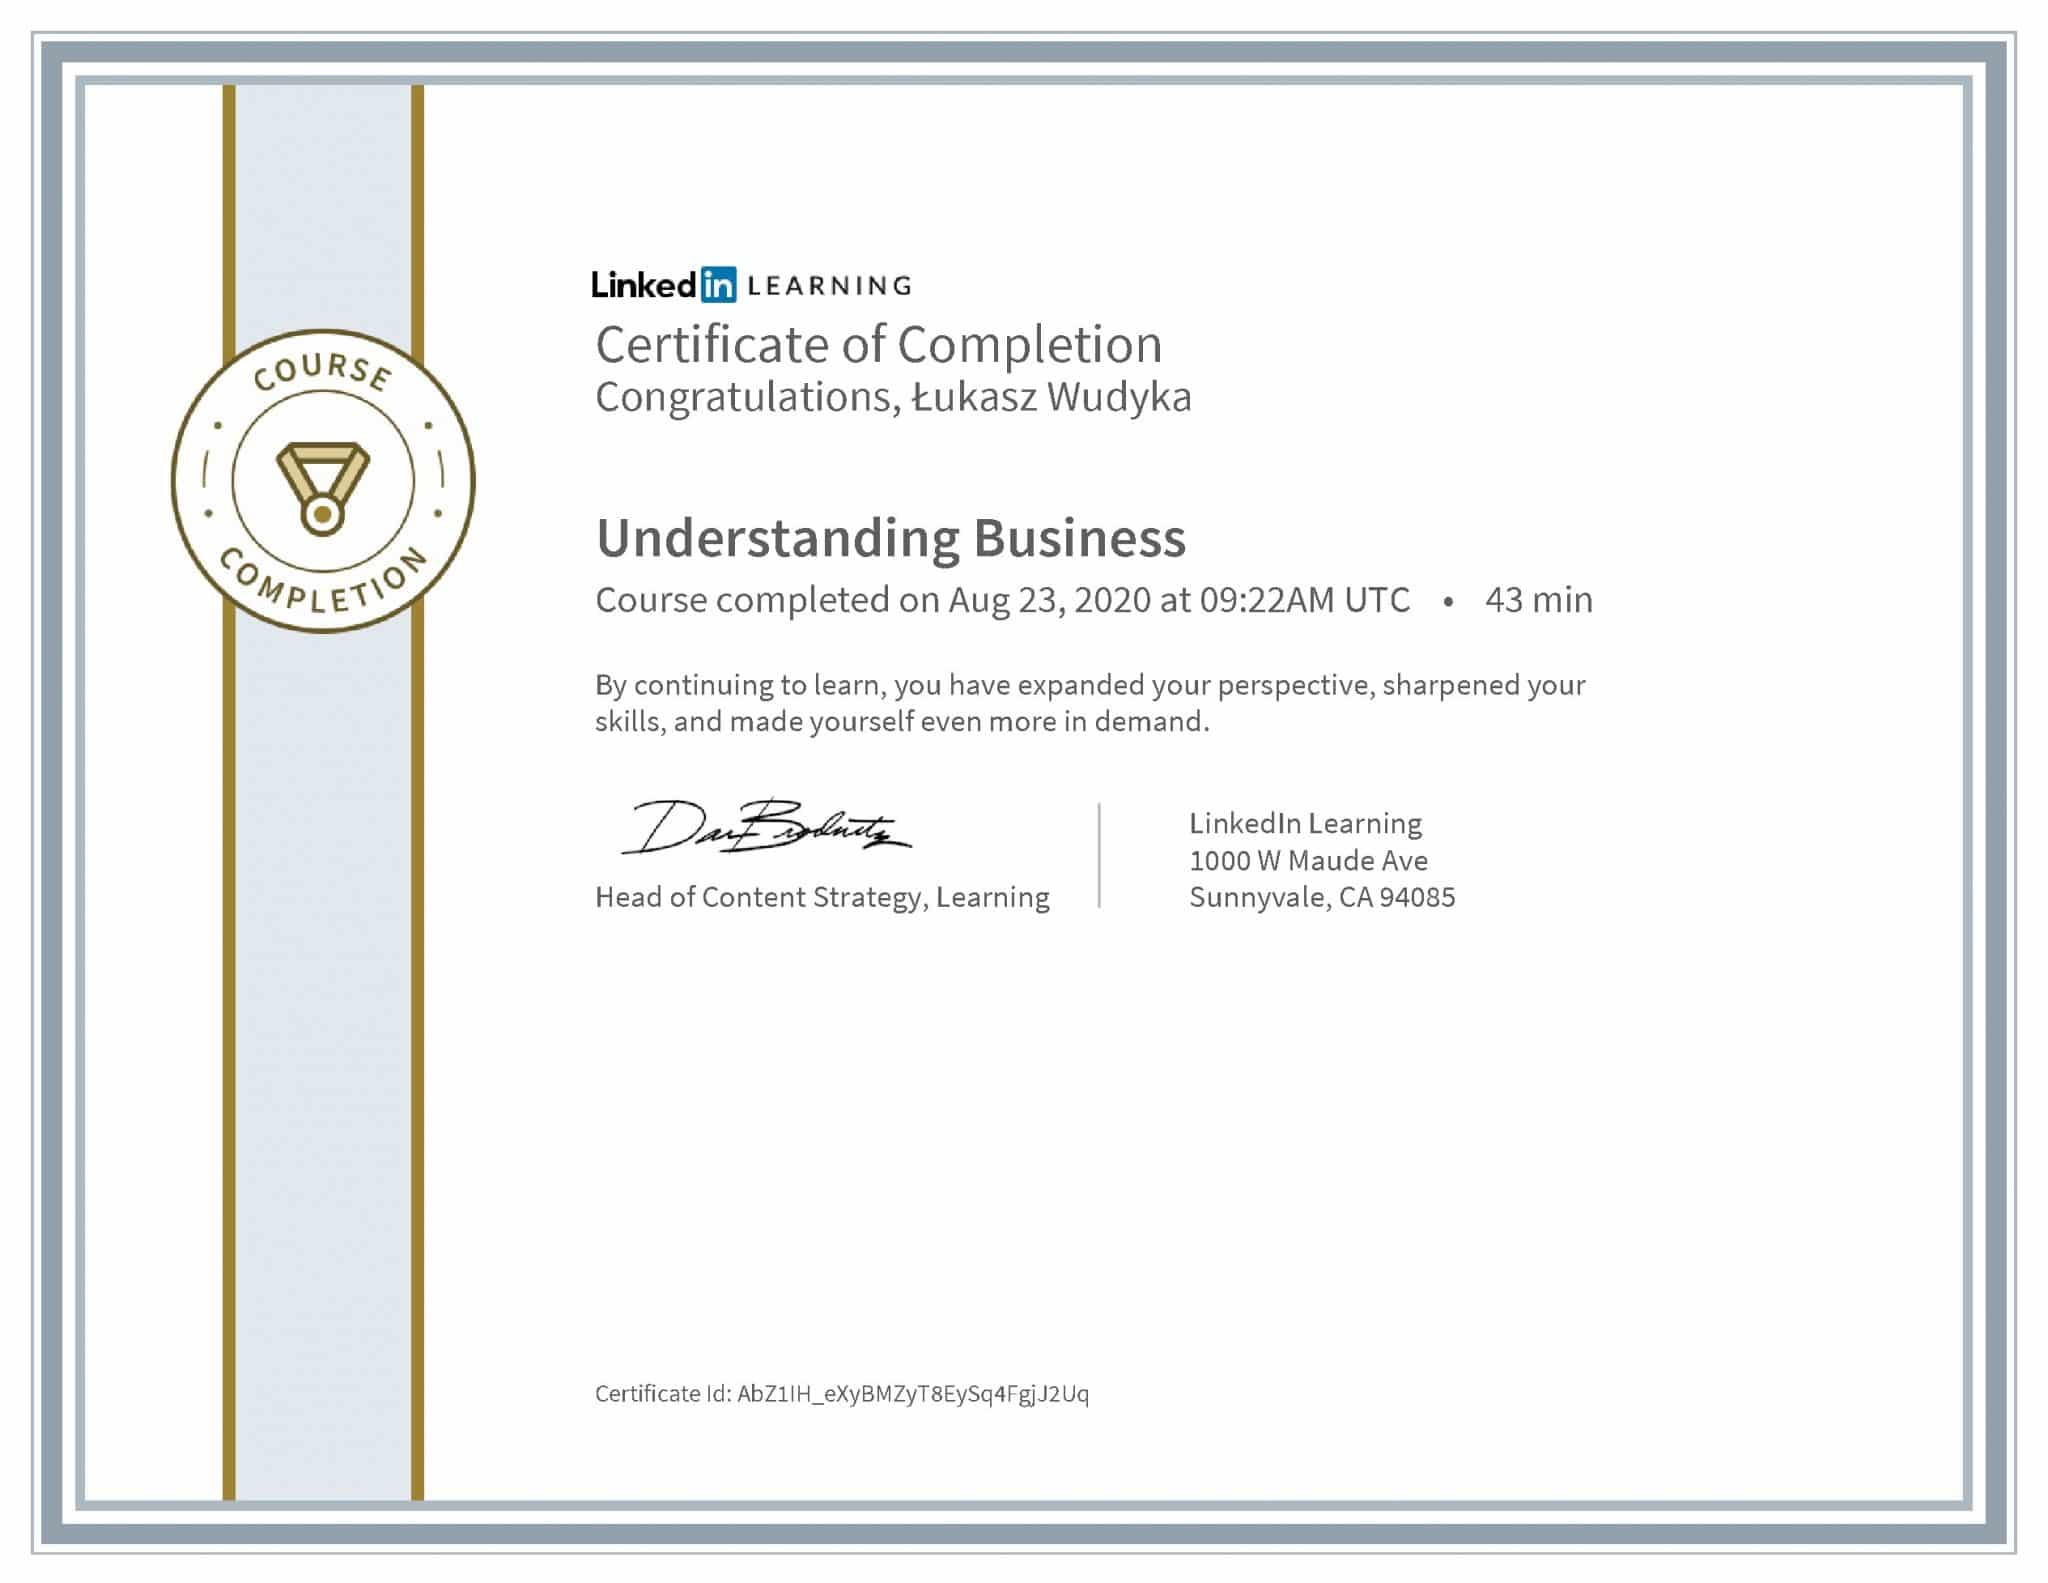 Łukasz Wudyka certyfikat LinkedIn Understanding Business